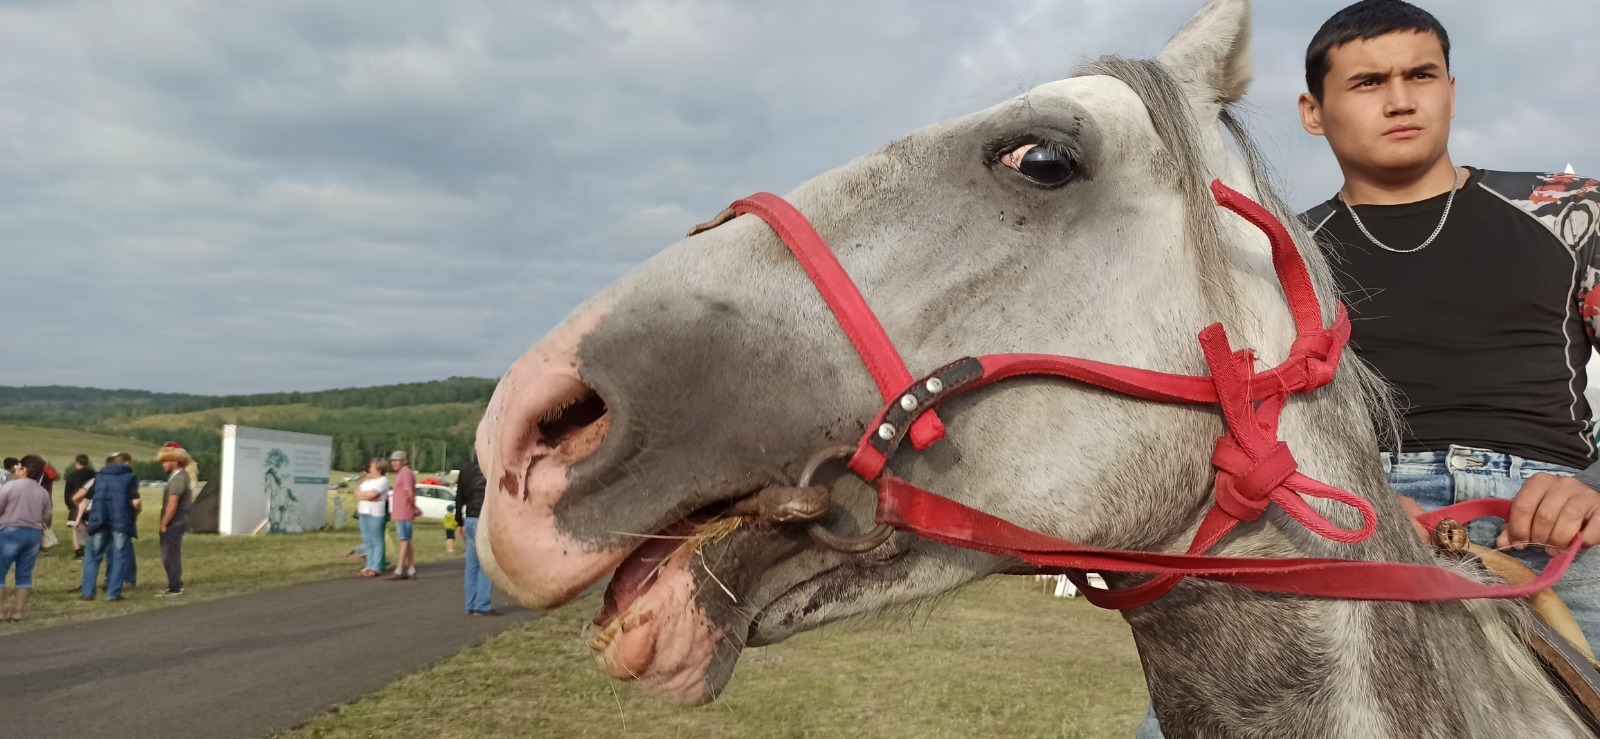 Лучшие моменты фестиваля Башкирская лошадь: конь бежит - земля дрожит